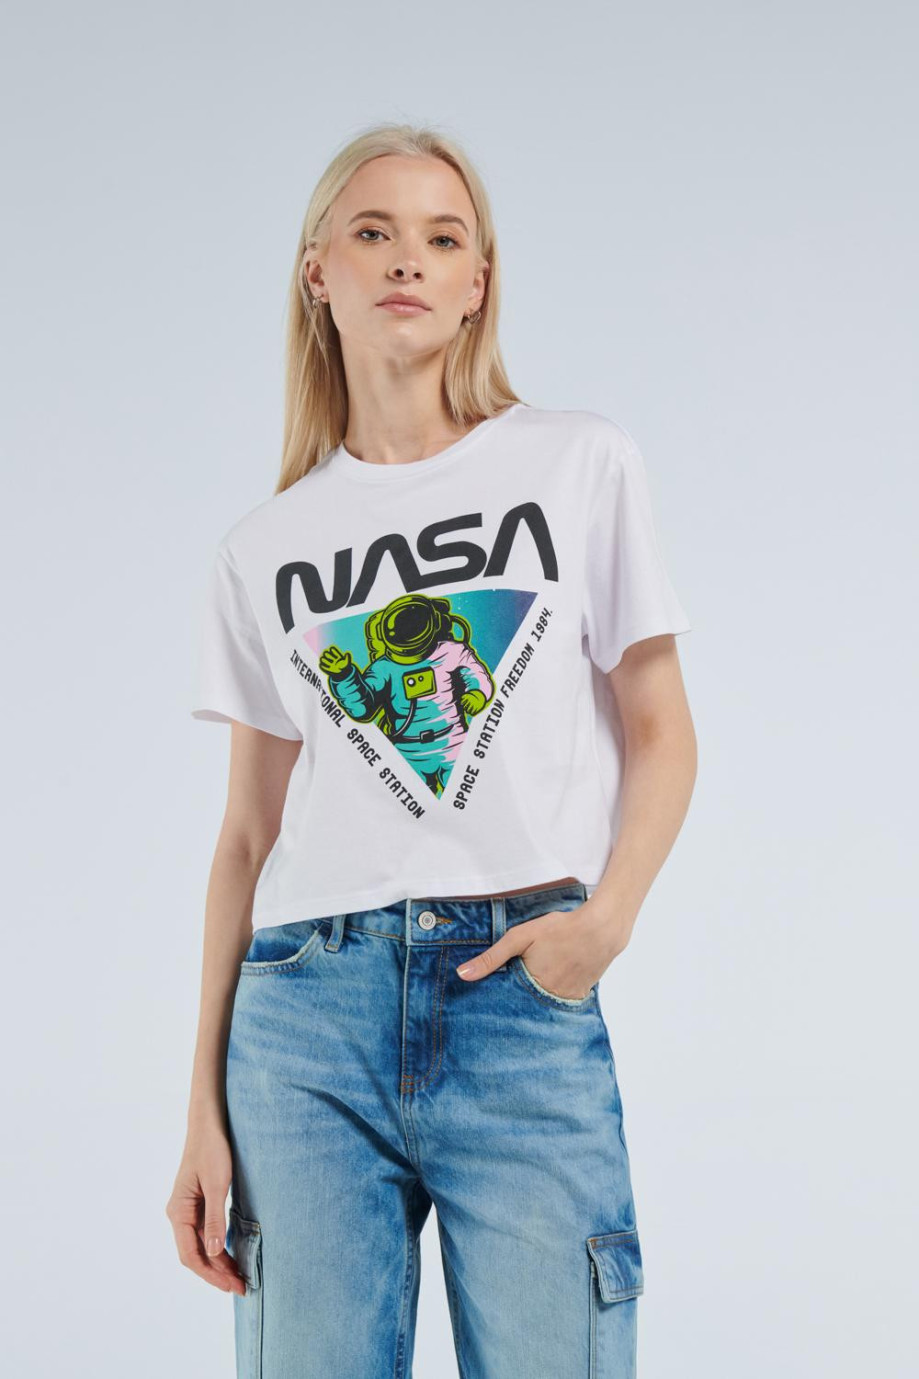 Camiseta blanca crop top con diseño de NASA y manga corta